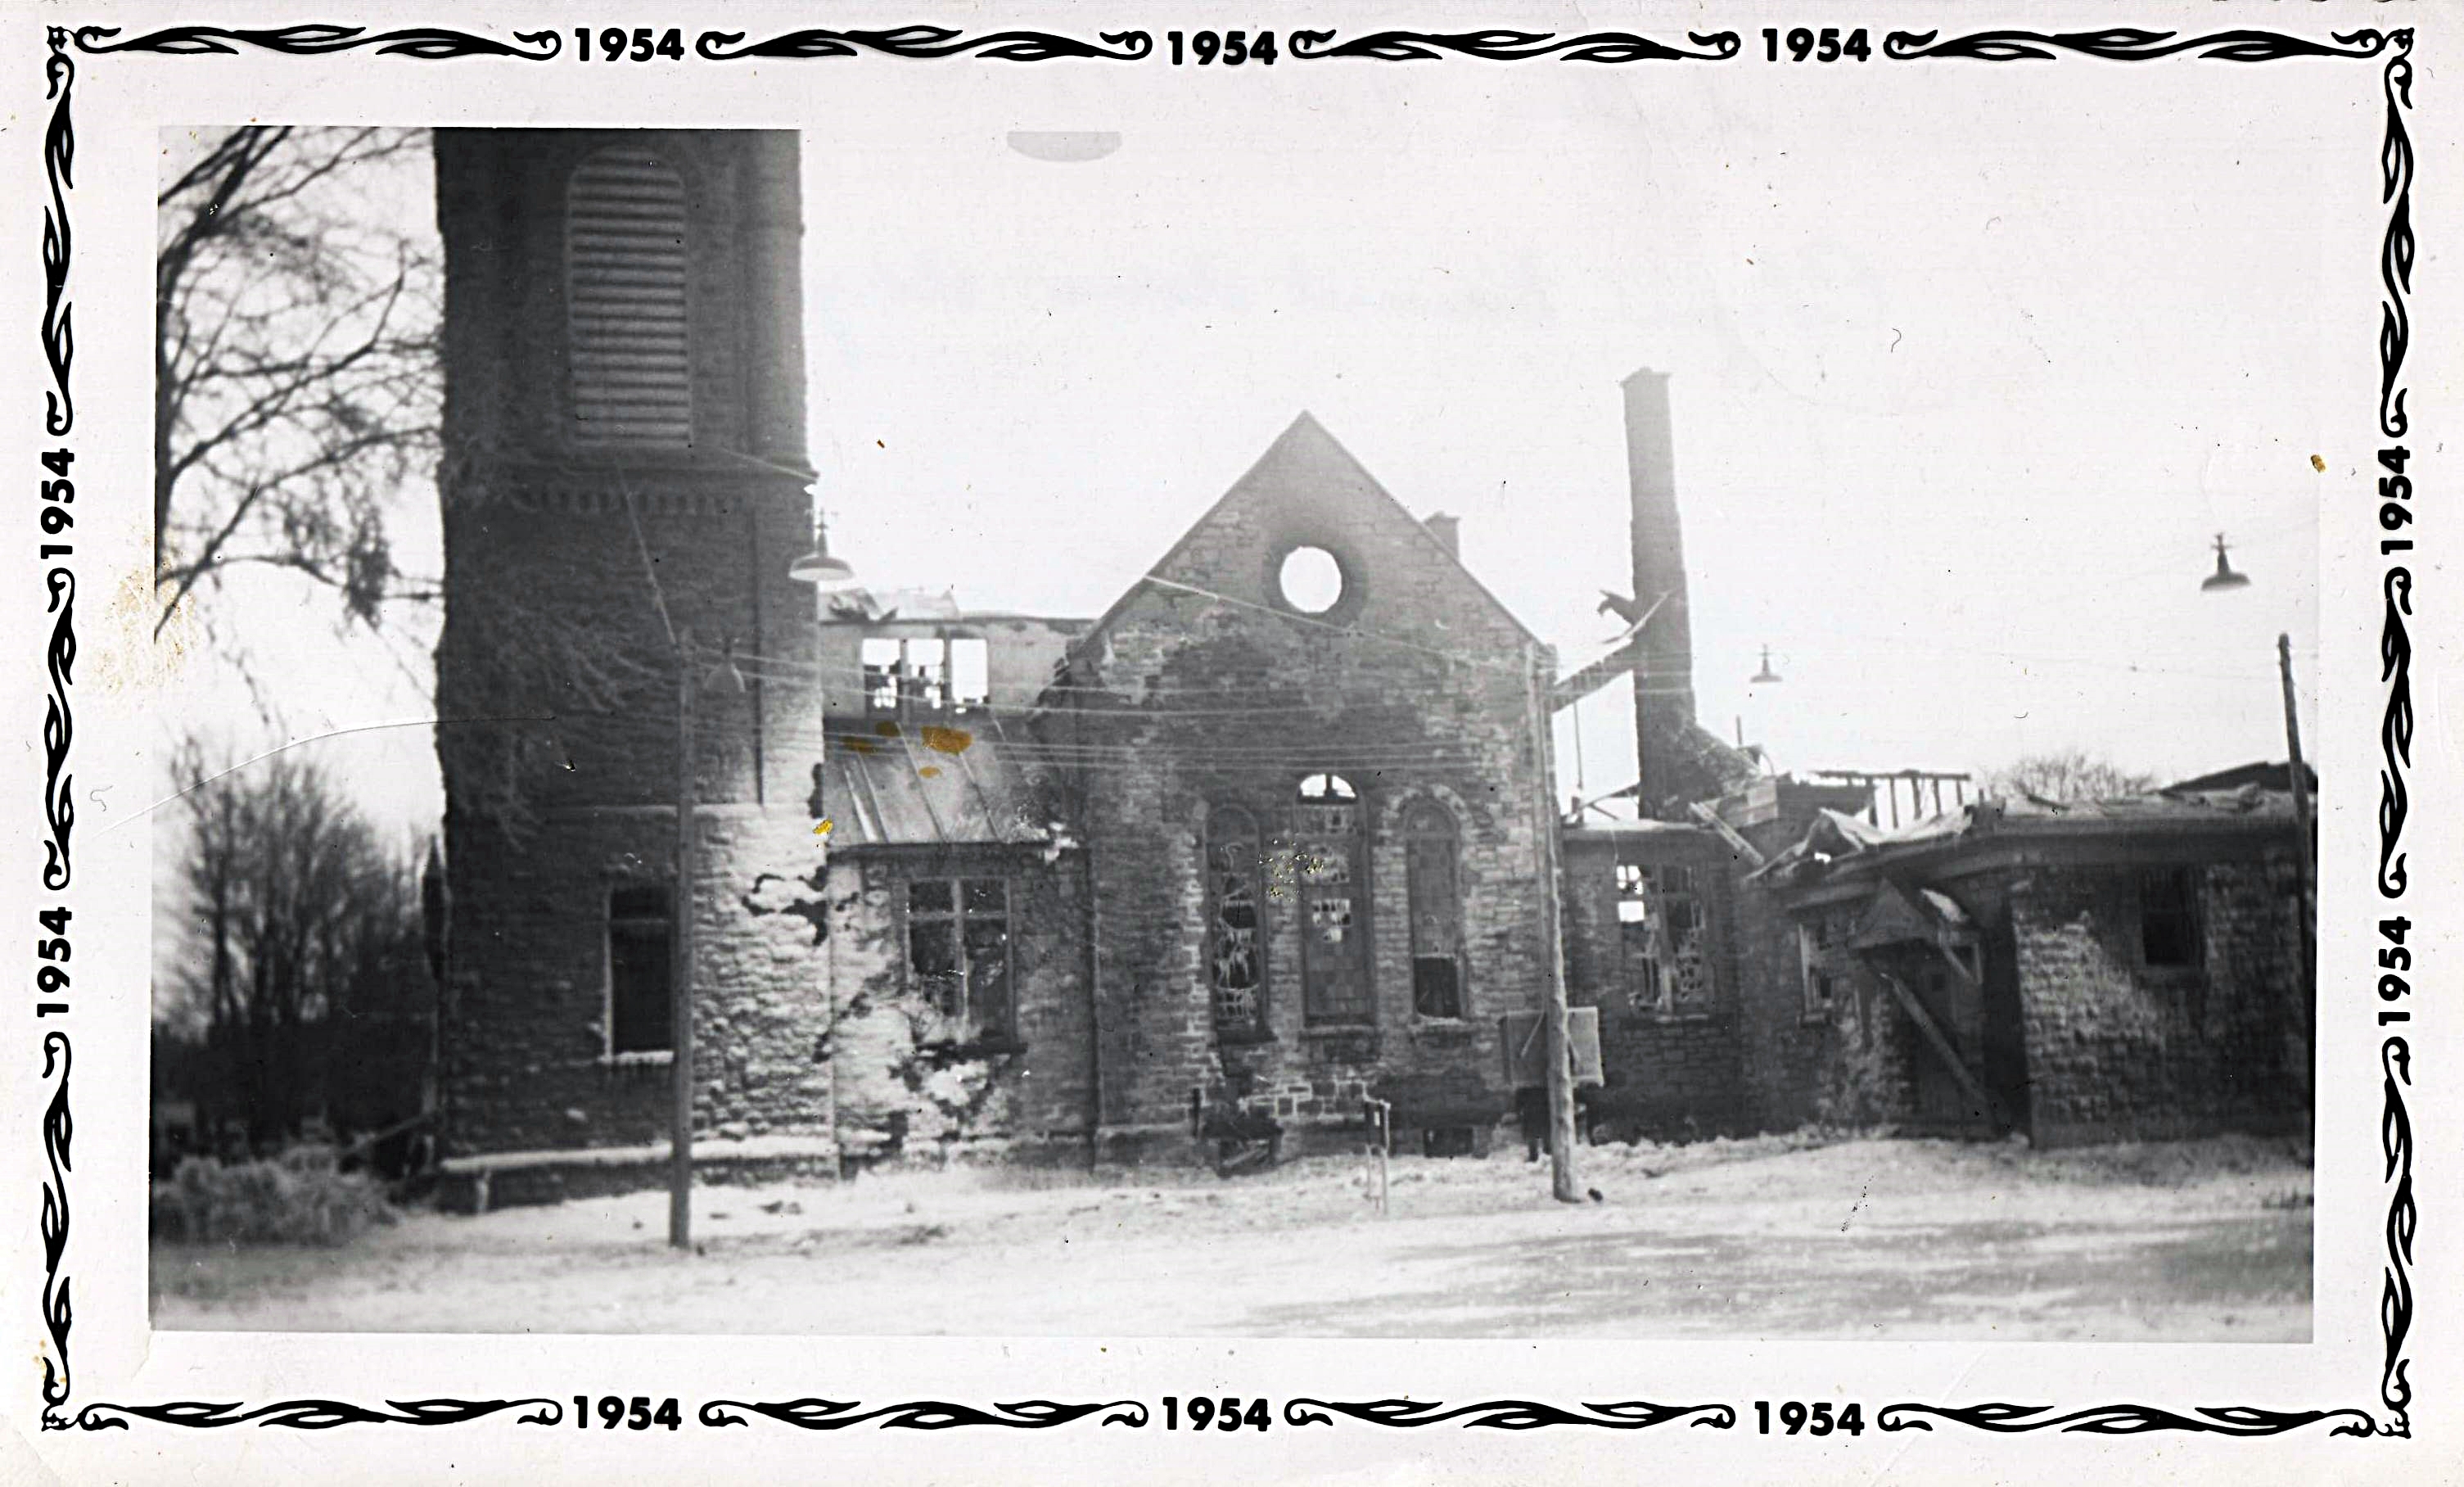 Church Fire 1954